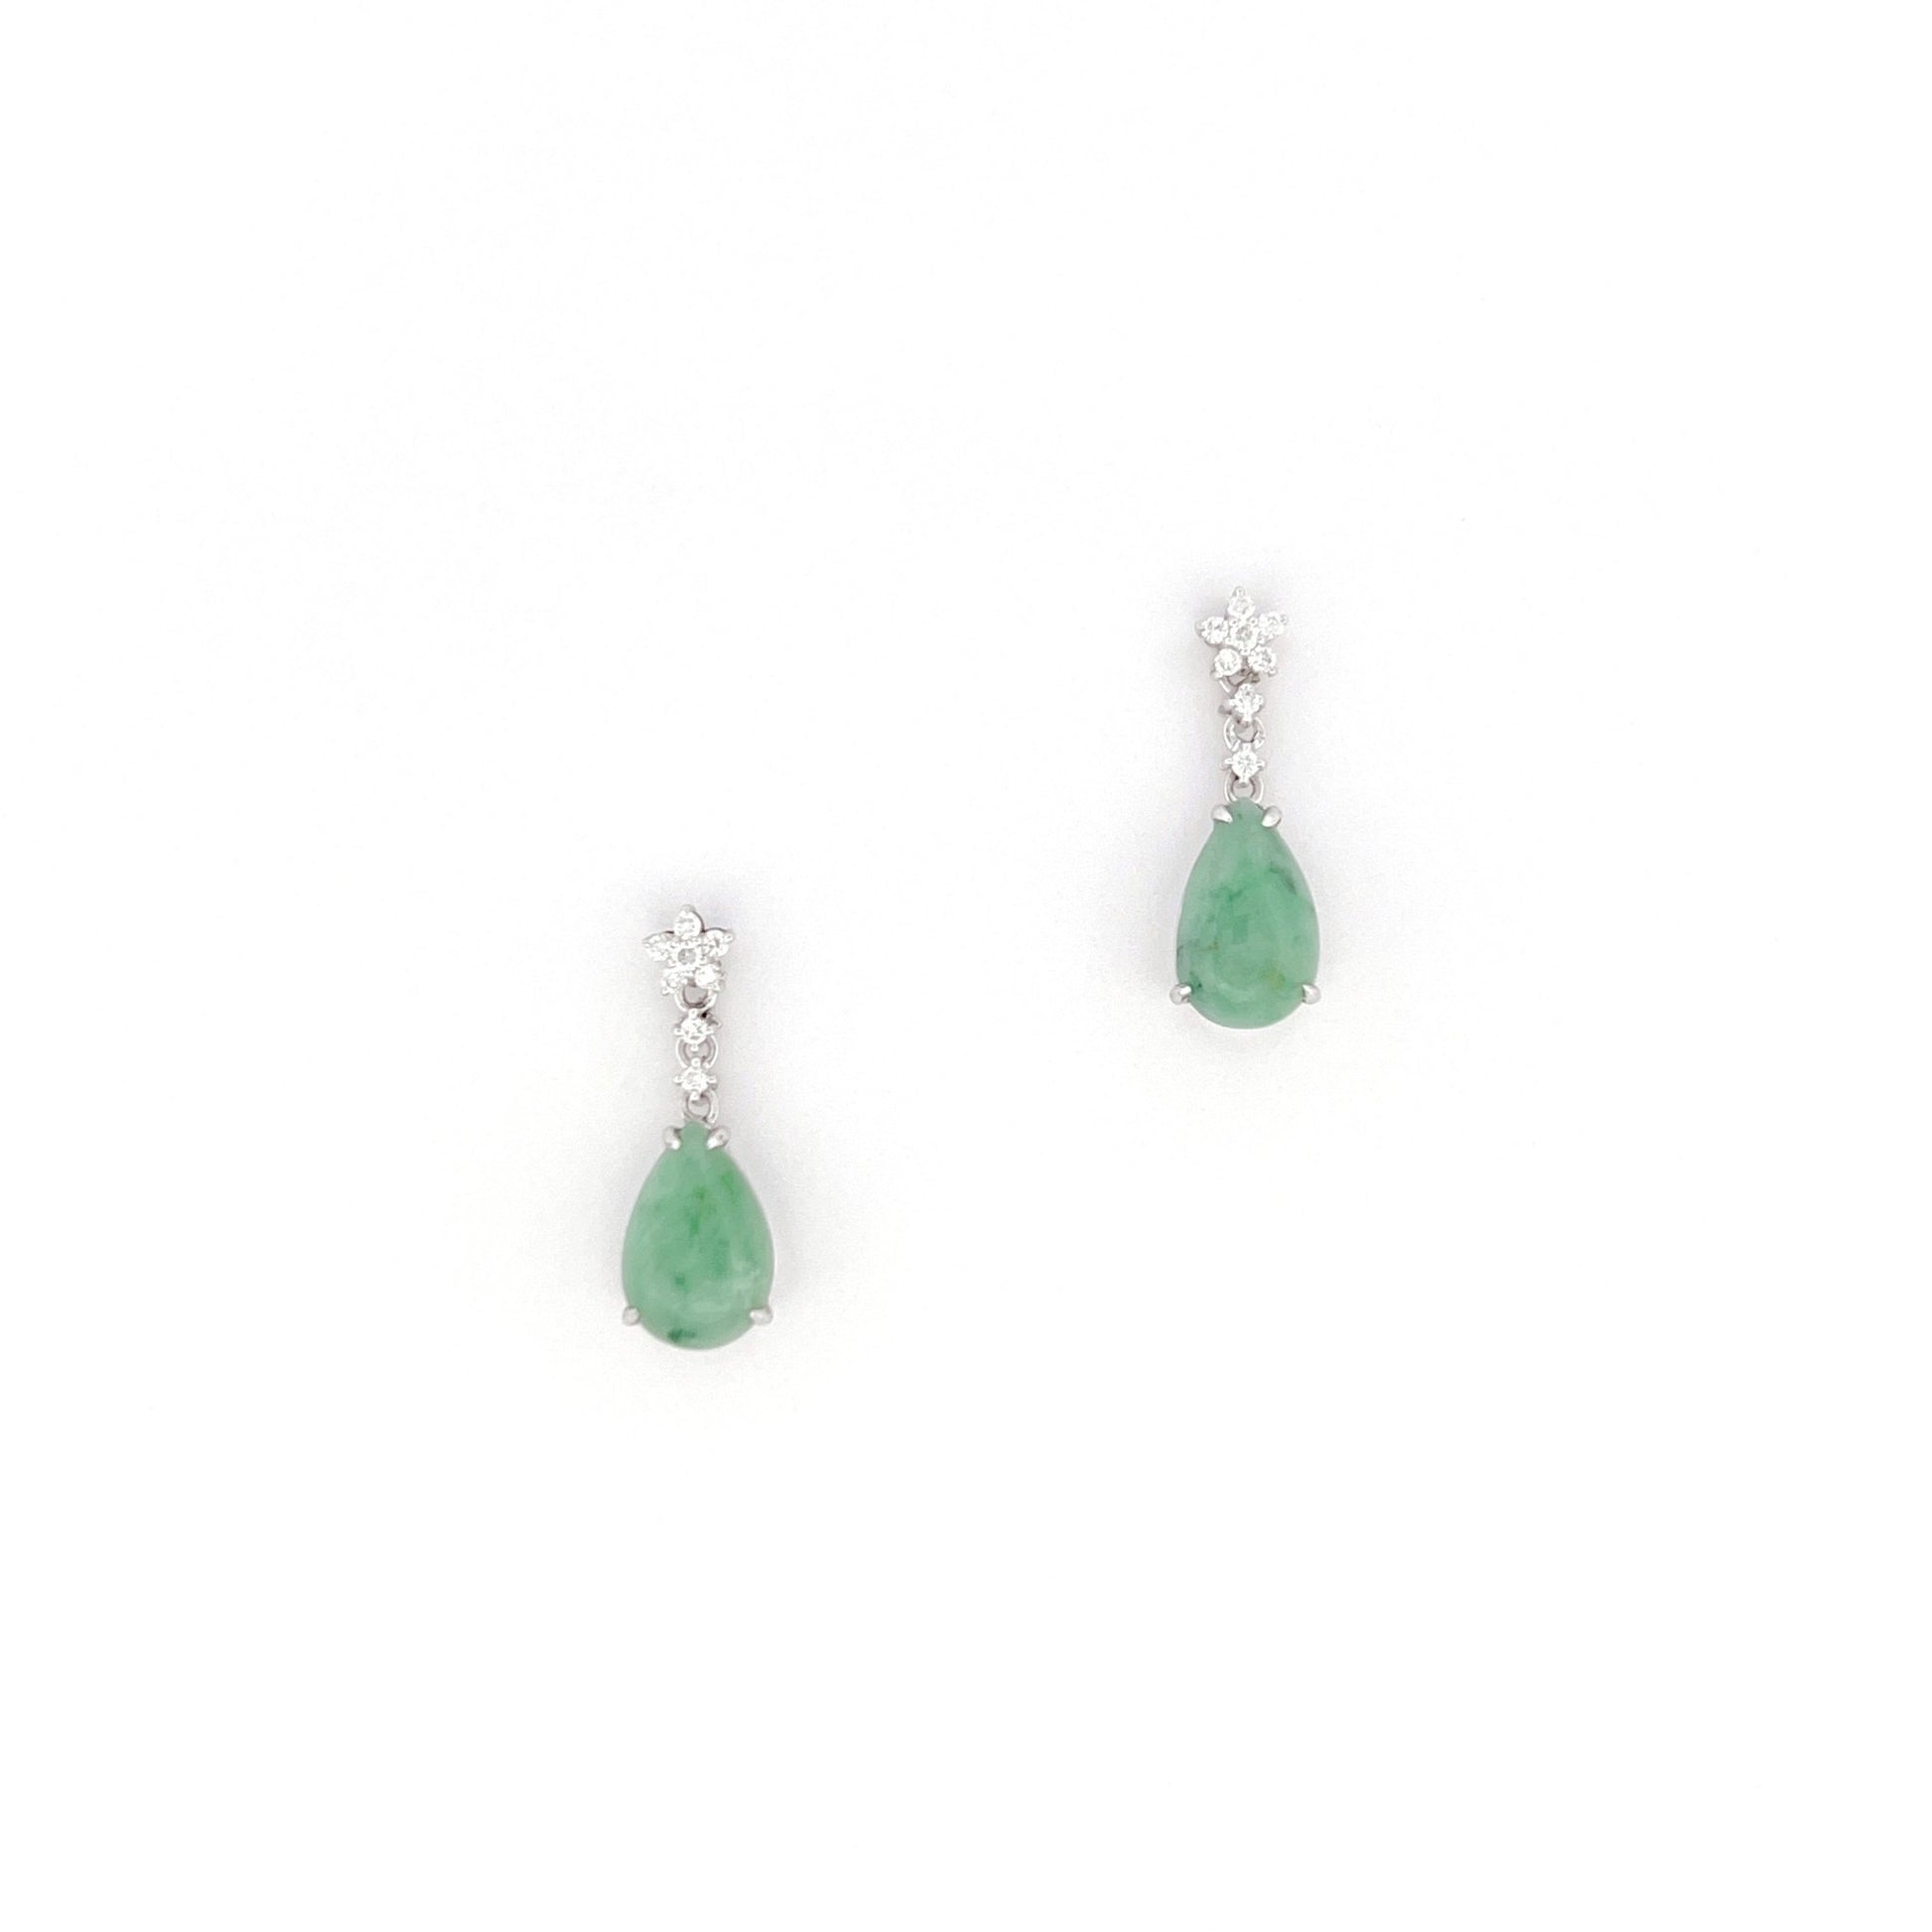 耳環 - 豆青綠色水滴形天然翡翠配鑽石拼花18K白色金耳環 - 雅玉珠寶